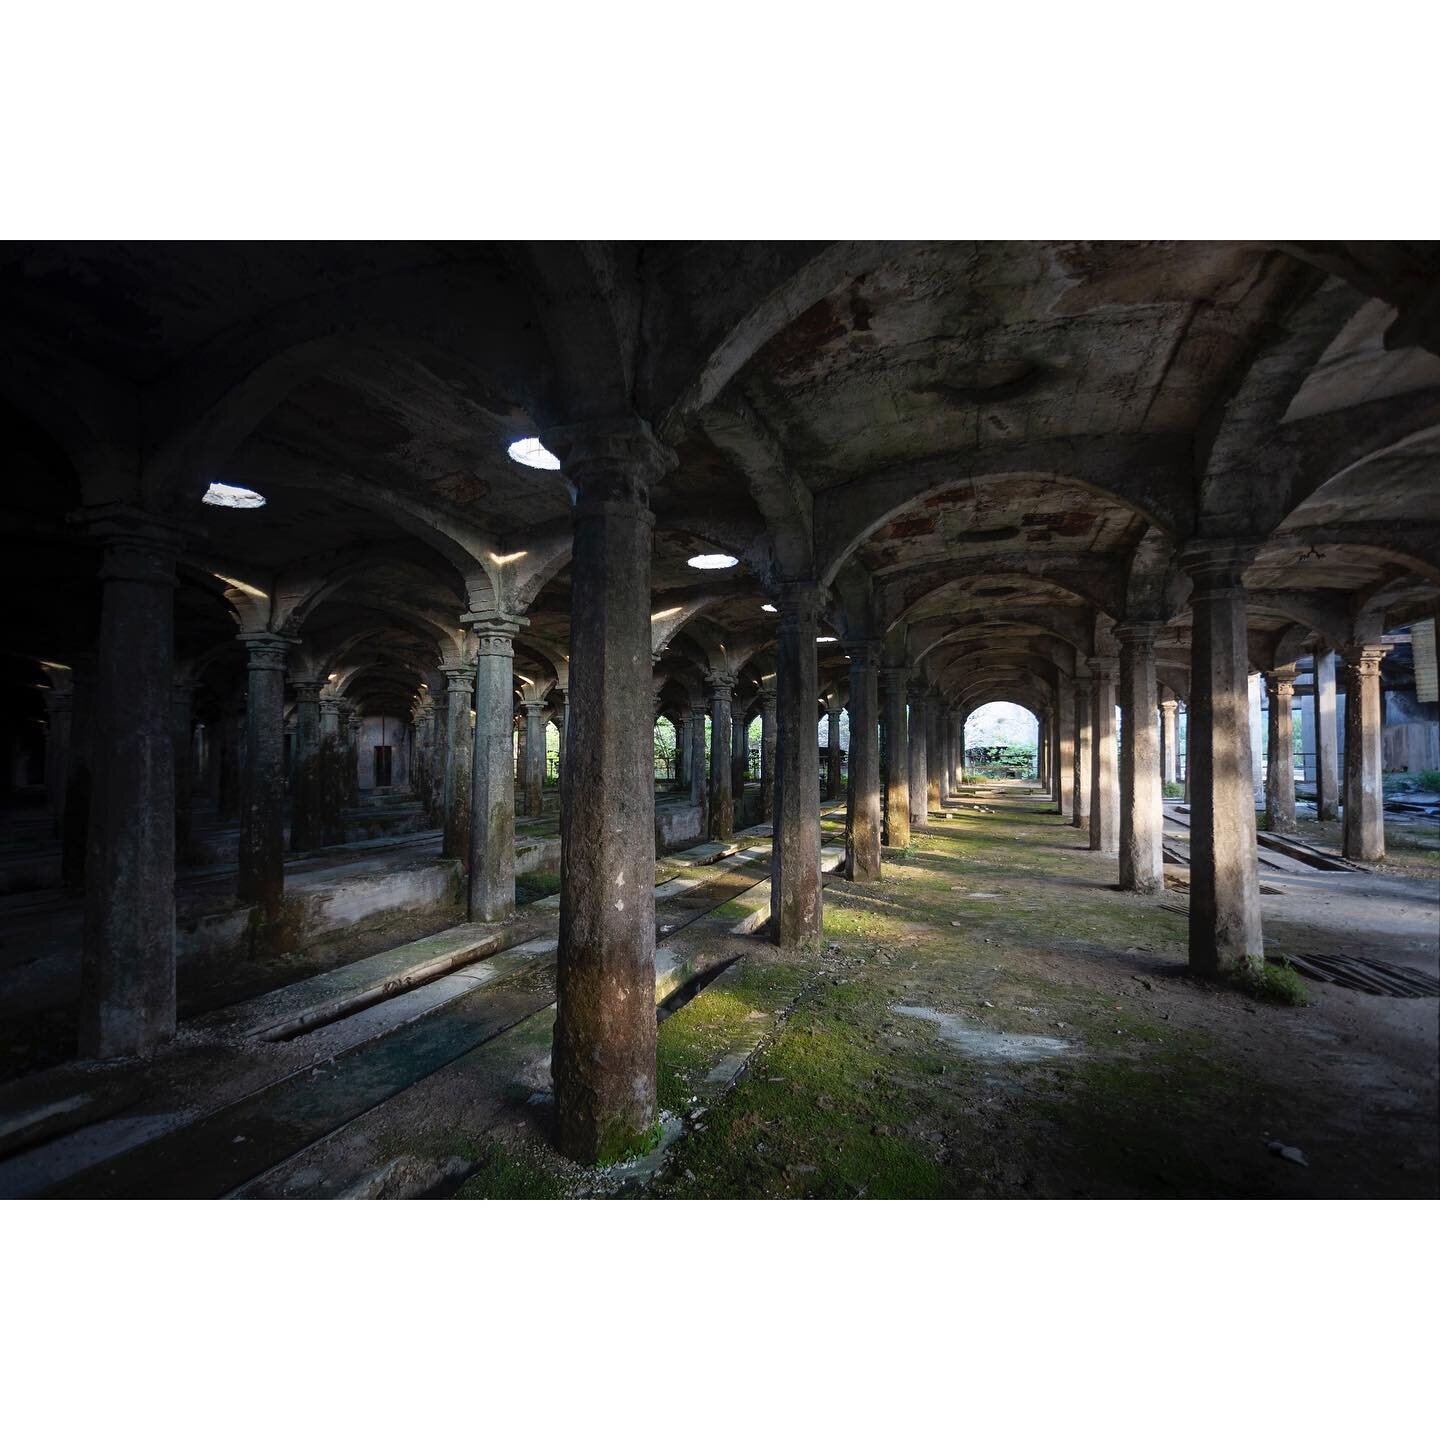 Cementificio, Bergamo
.
#urbexphotography #abandonedaustralia  #urbex #abandoned #urbanexploration #realgoodmag #oftheafternoon #yetmagazine #imaginarymagnitude #abandonedplaces #somewheremag #theheavycollective #documentingspace #rundownmagazine #ur